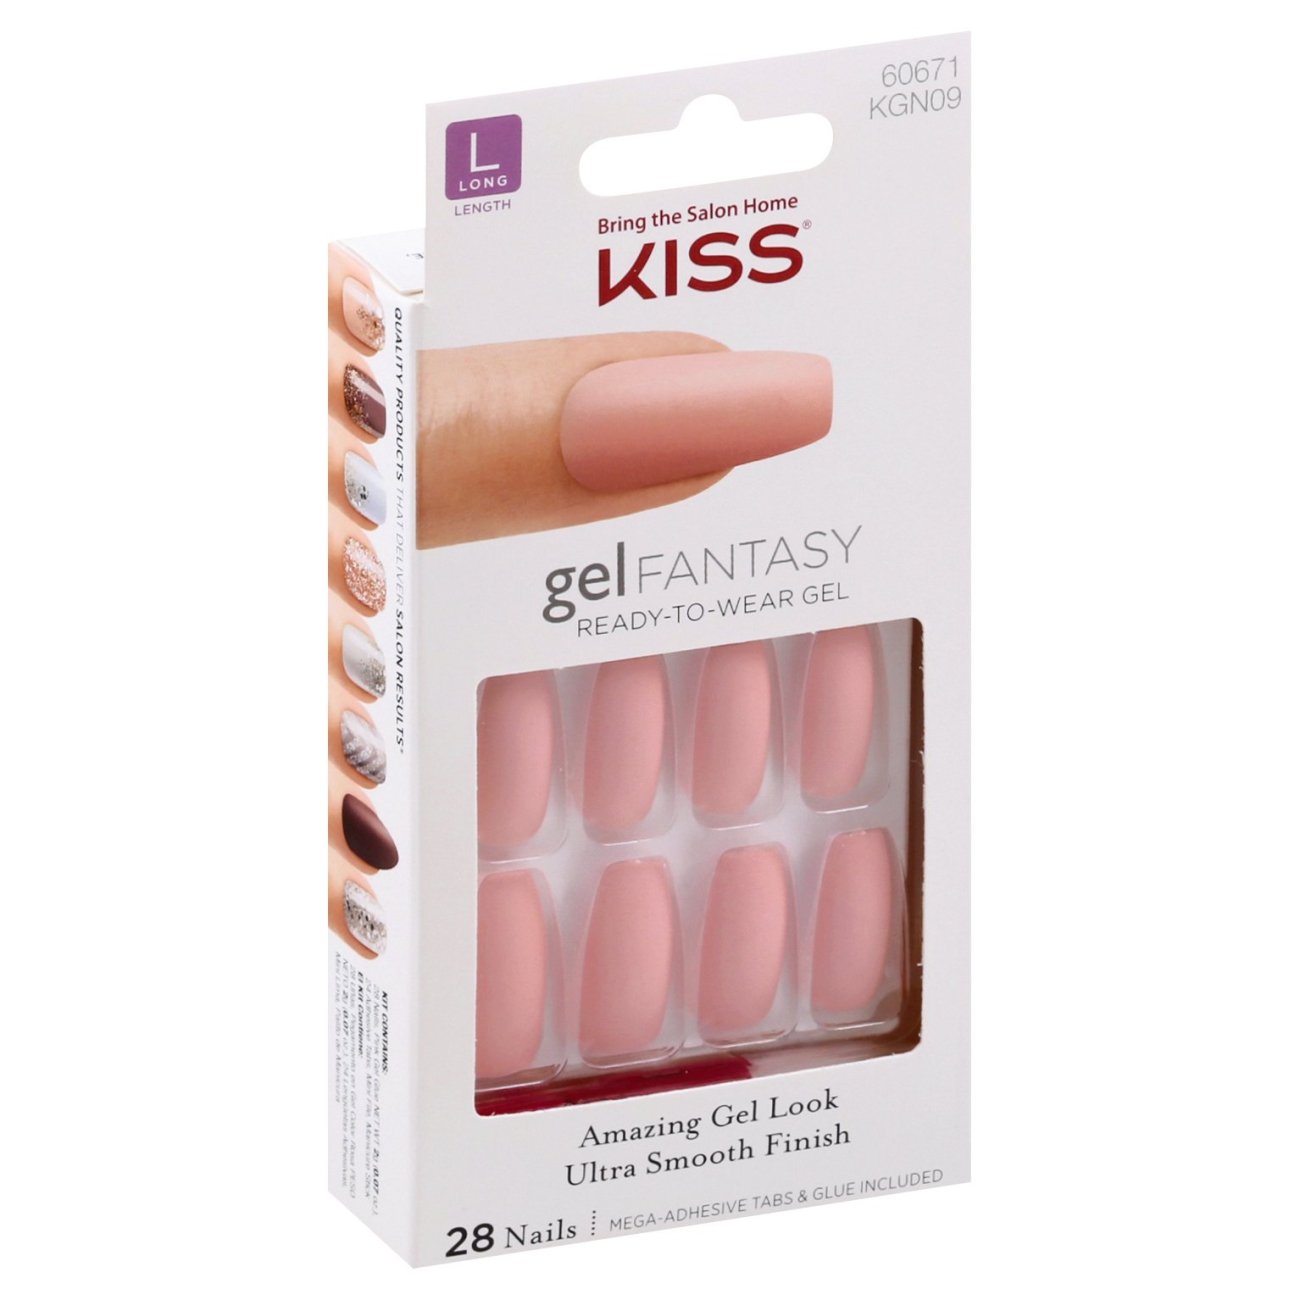 Kiss gel FANTASY Nails Ab Fav Shop Nail Sets at HEB